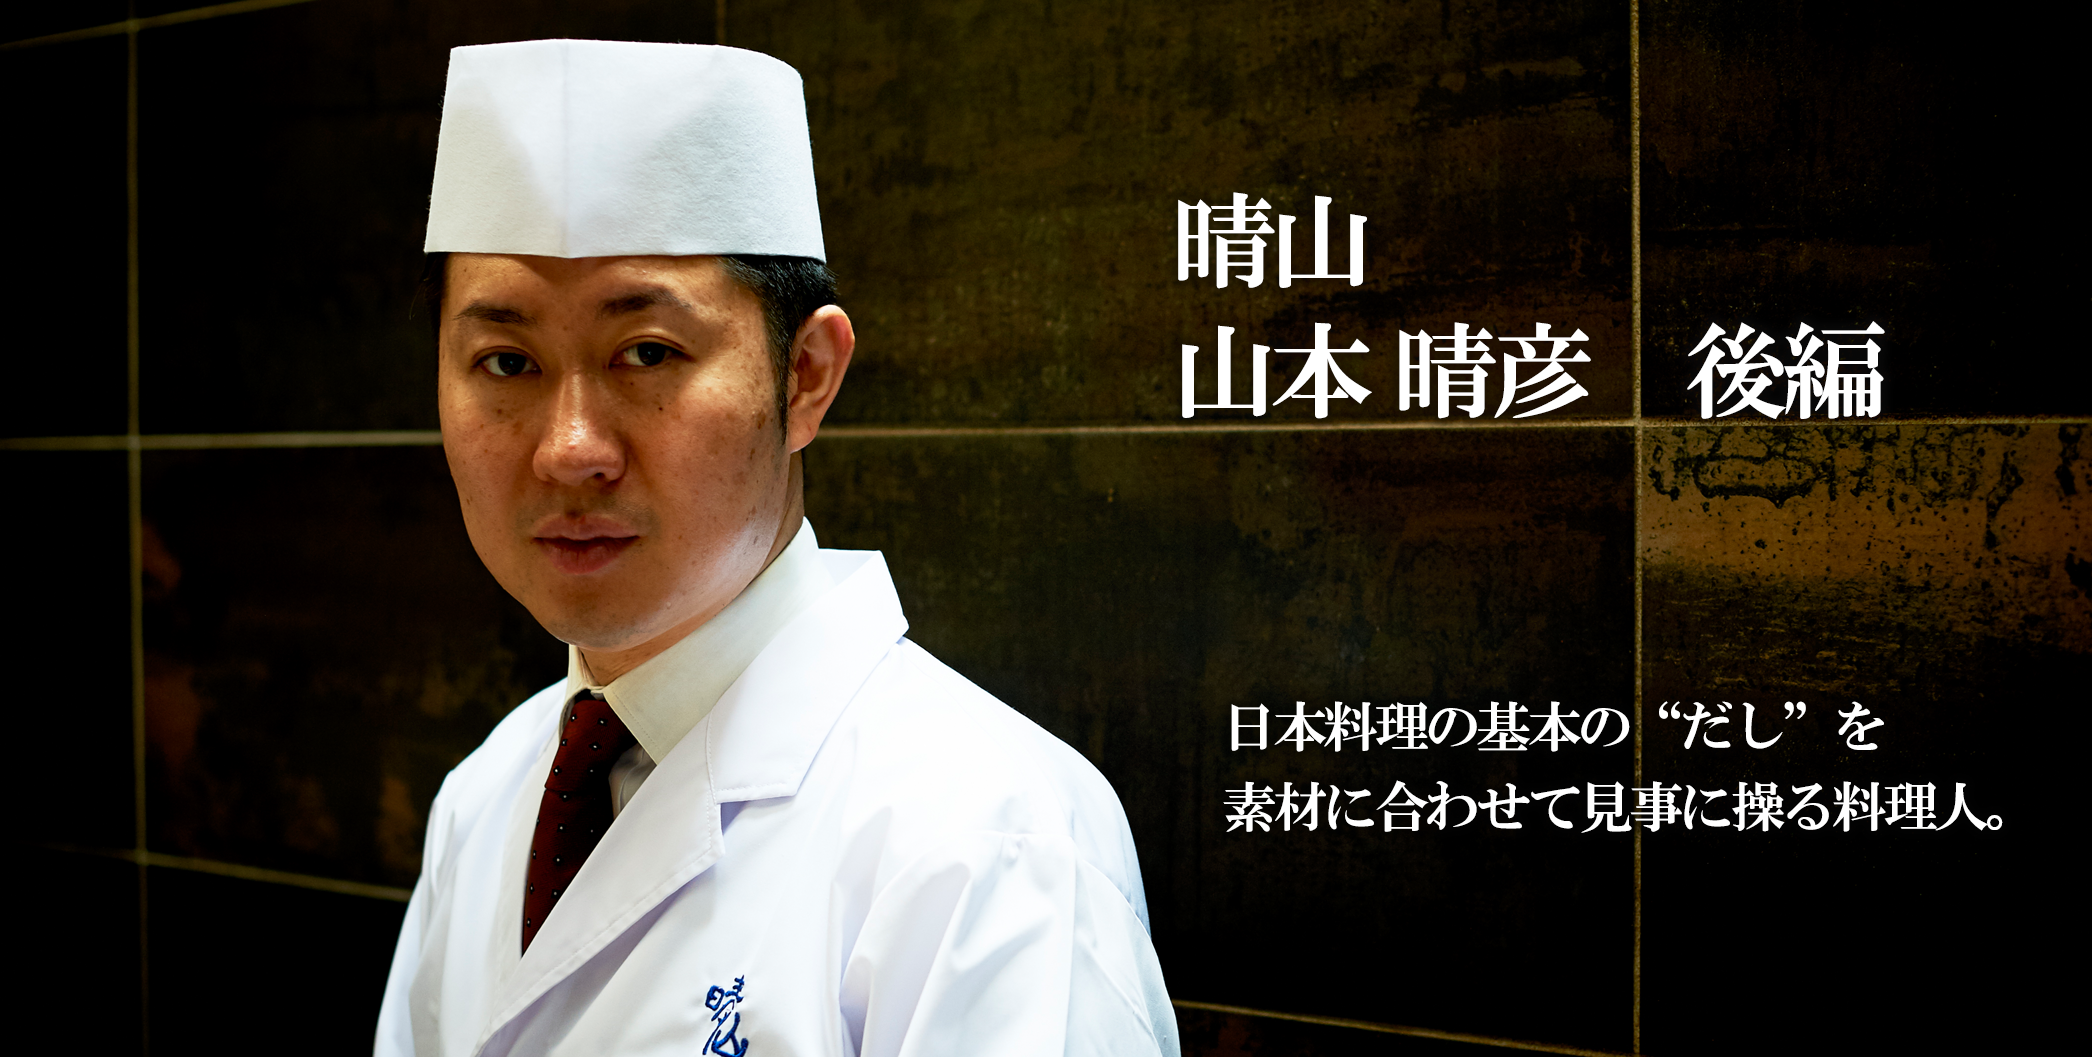 仕江府 九一三 / TESTSHOP 日本料理の基本の“だし”を 素材に合わせて見事に操る料理人。